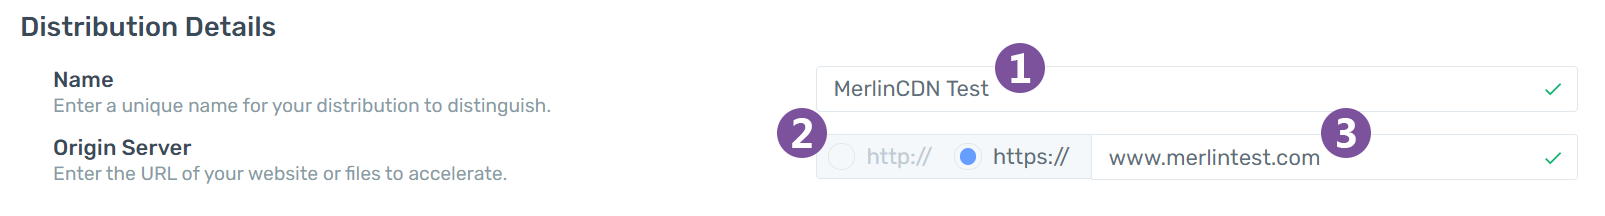 merlin-test-origin-server-name